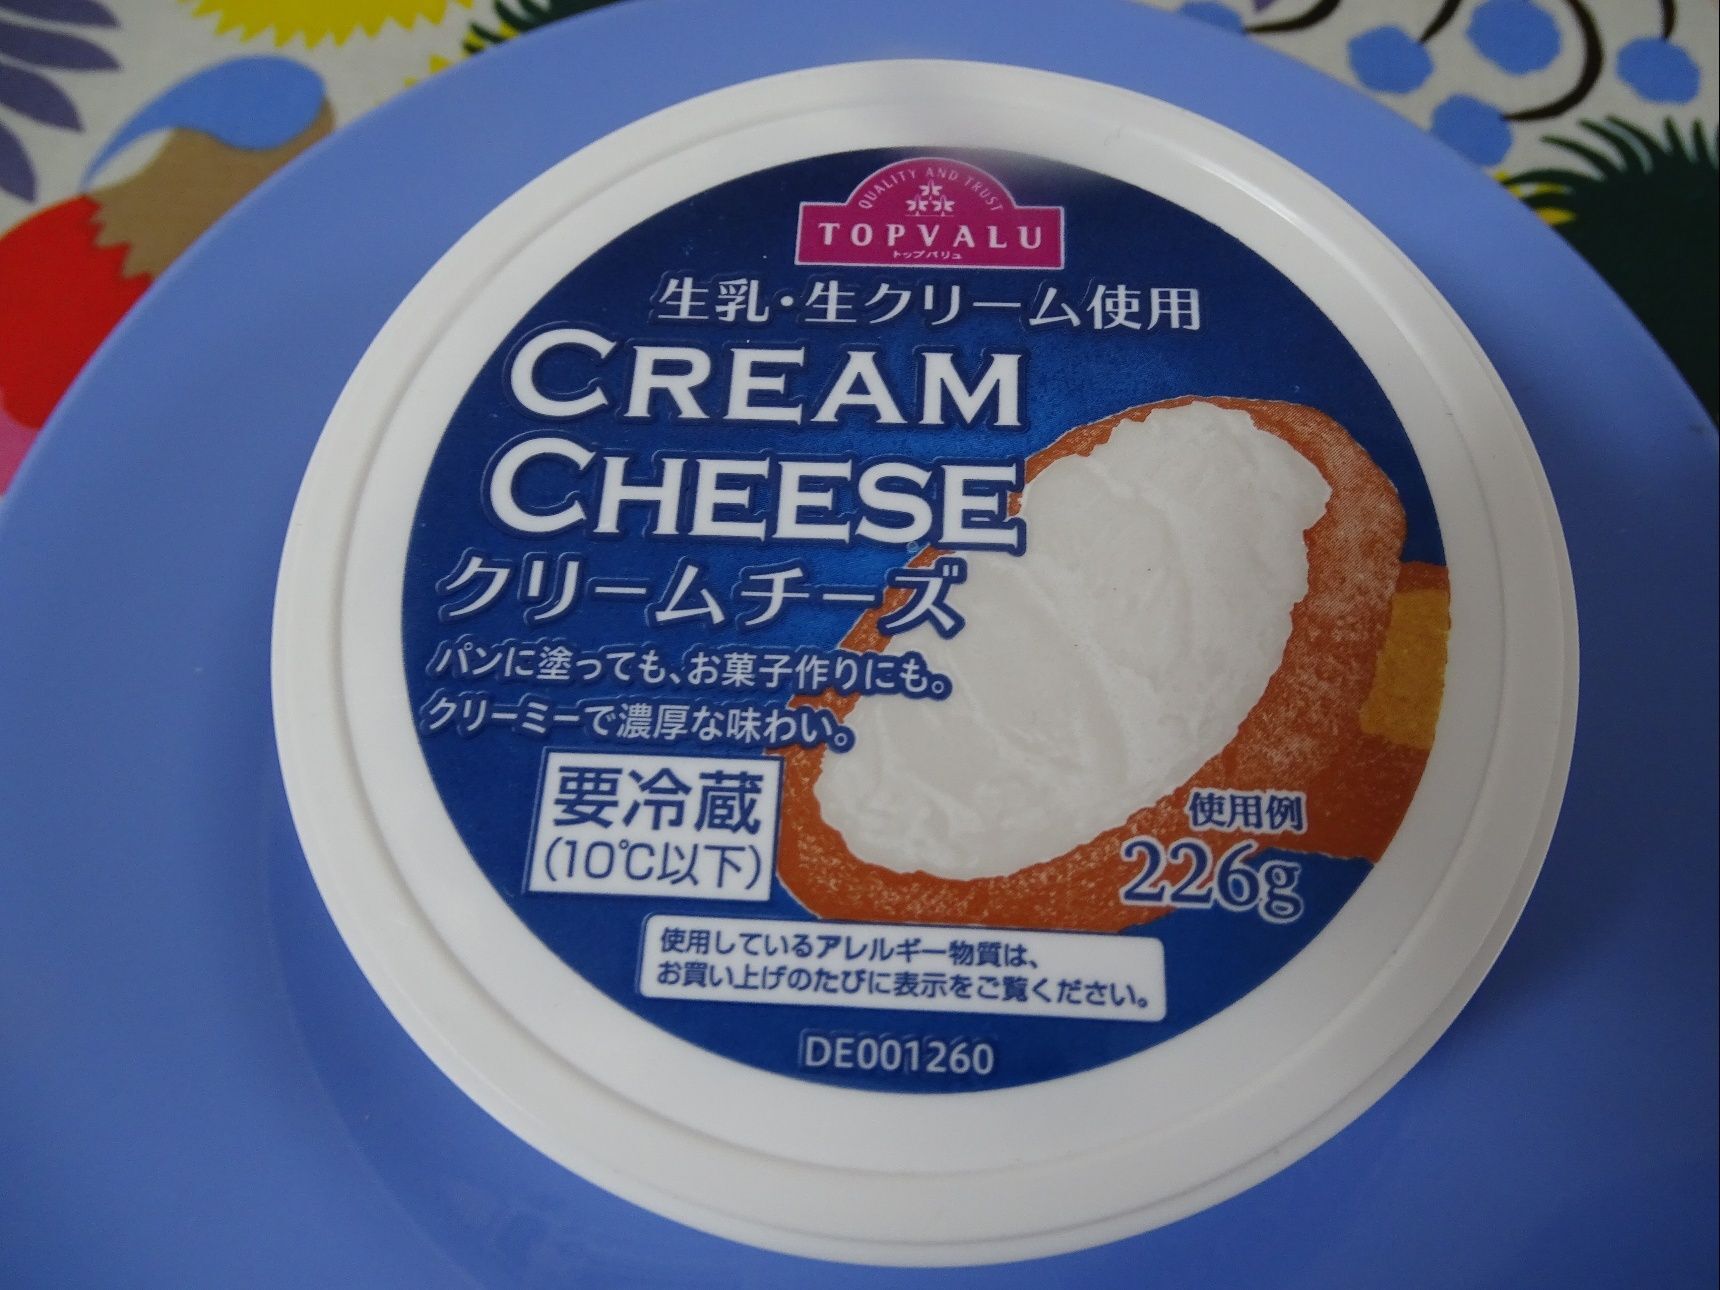 クリームの様なクリームチーズでしょ！！